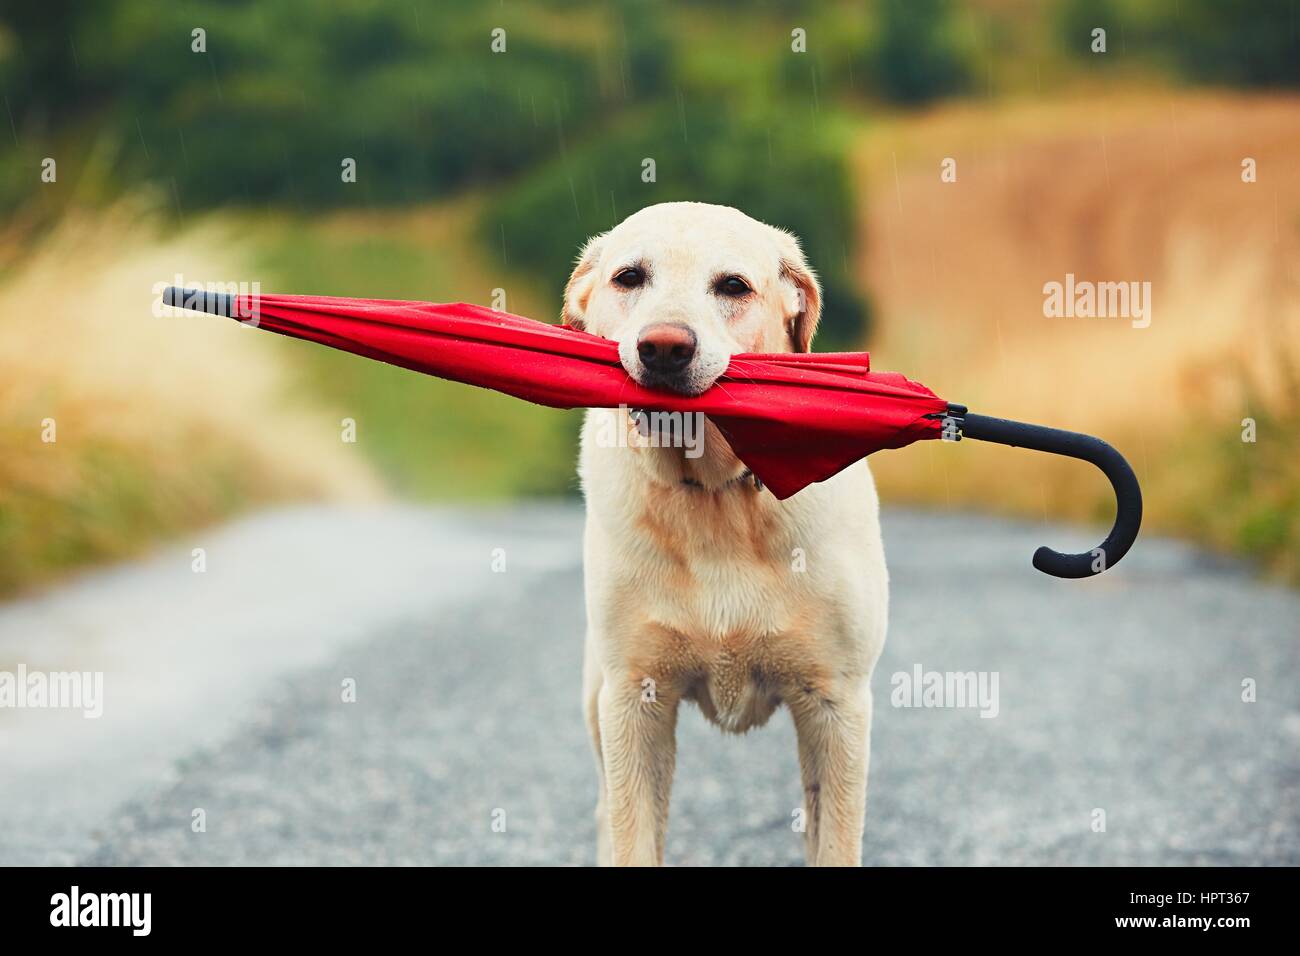 Chien obéissant à des mauvais jours. Adorable labrador retriever est maintenant parapluie rouge dans la bouche et en attente de son propriétaire dans la pluie. Banque D'Images